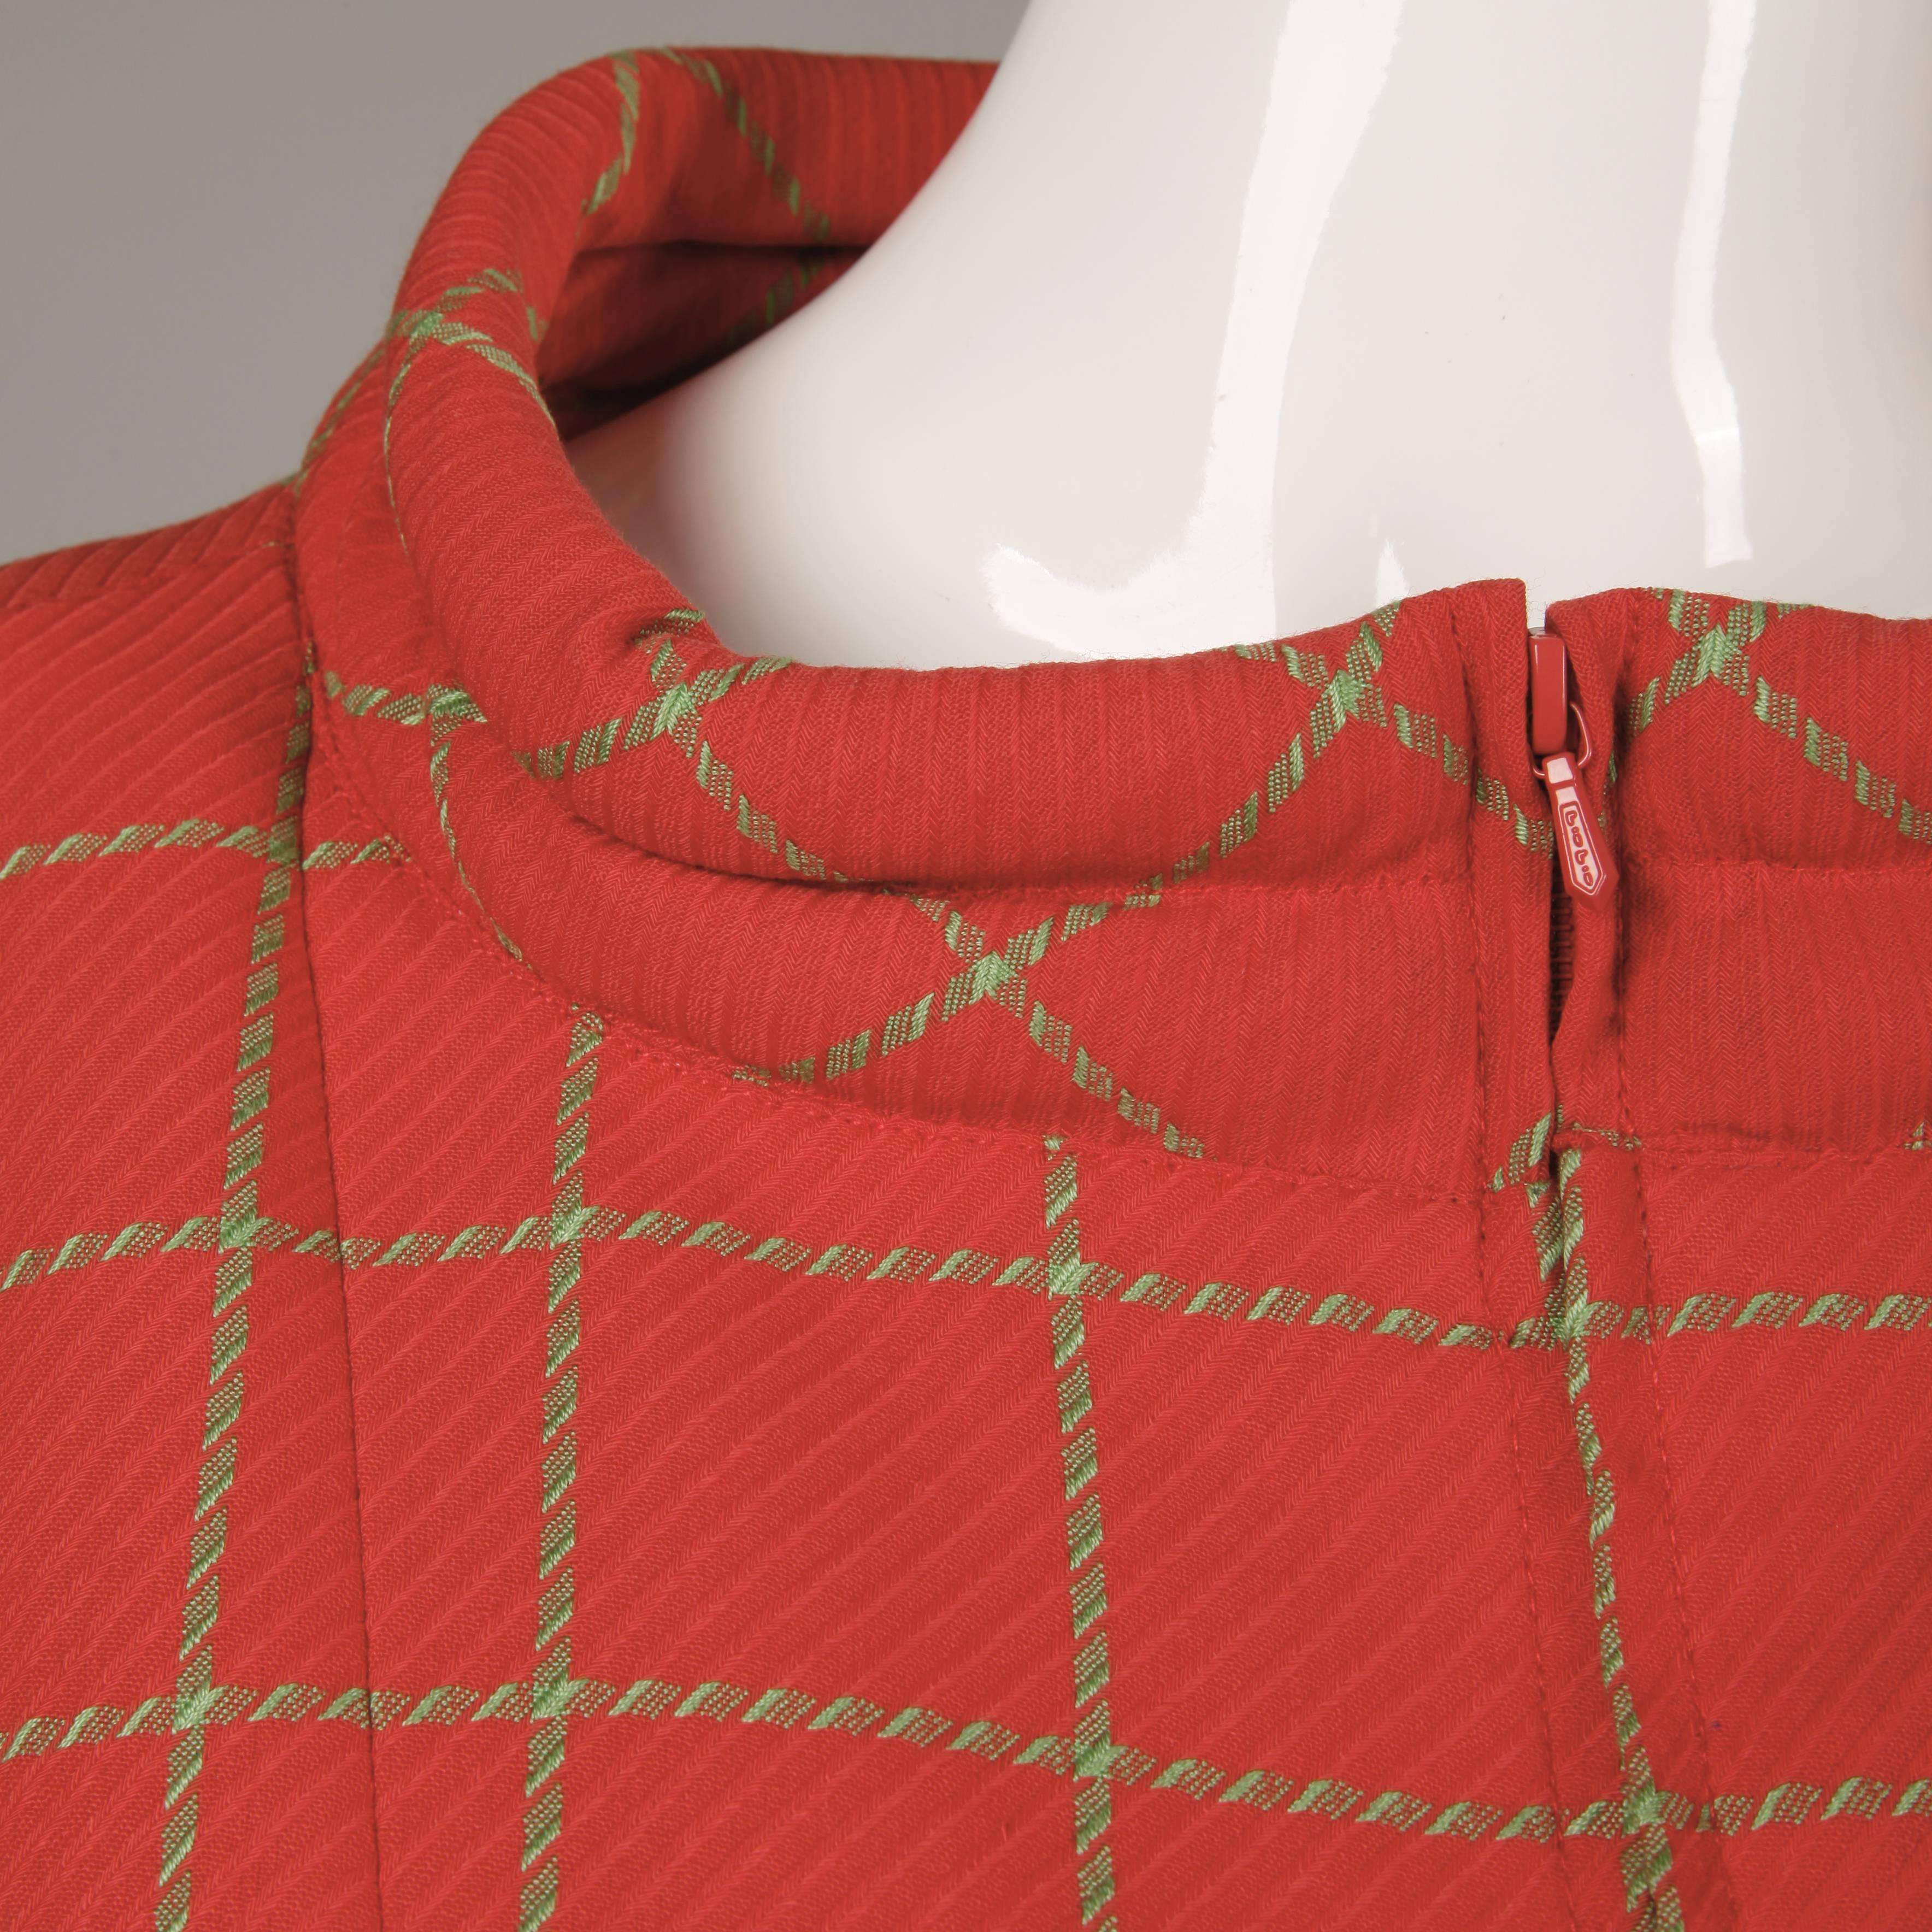 1980s Bernard Perris Vintage Wool/ Cashmere Jacket + Skirt Suit Ensemble For Sale 2